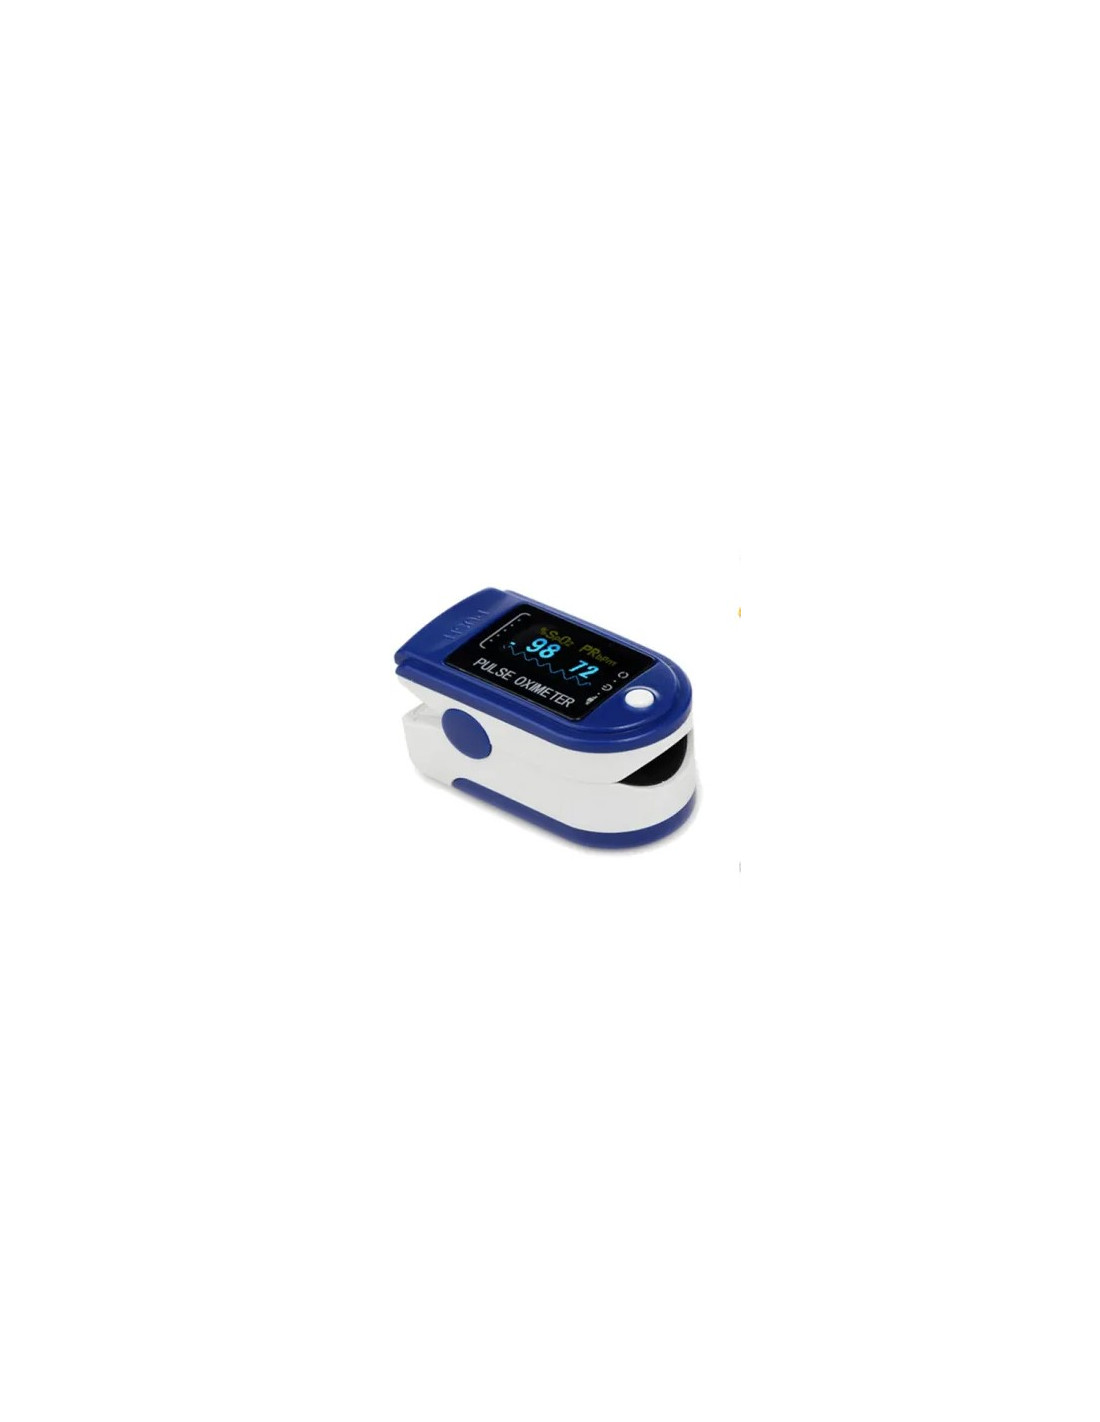 Oxymètre de pouls bleu led mediclinic - Drexco Médical